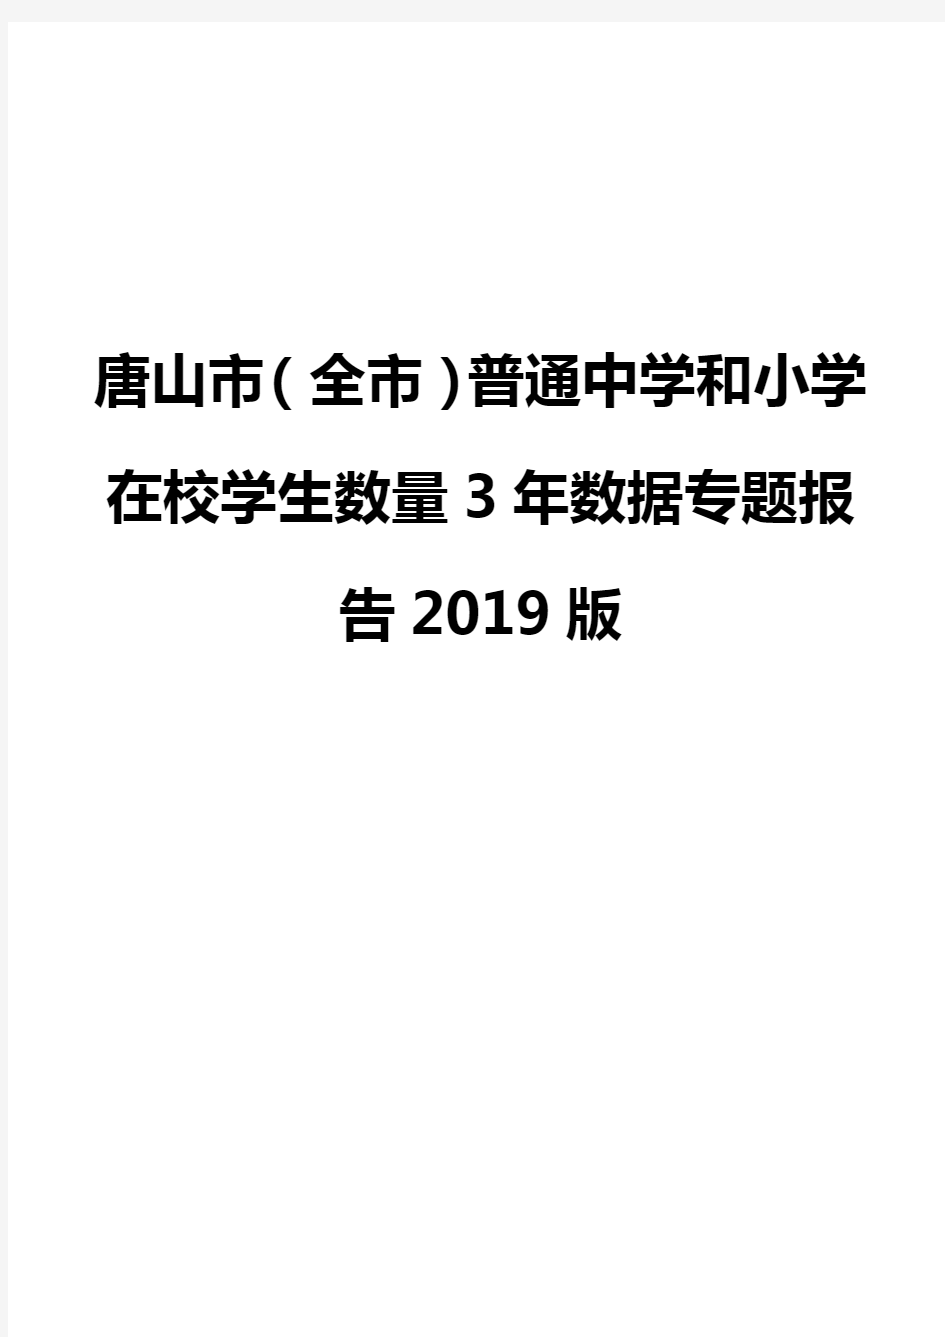 唐山市(全市)普通中学和小学在校学生数量3年数据专题报告2019版